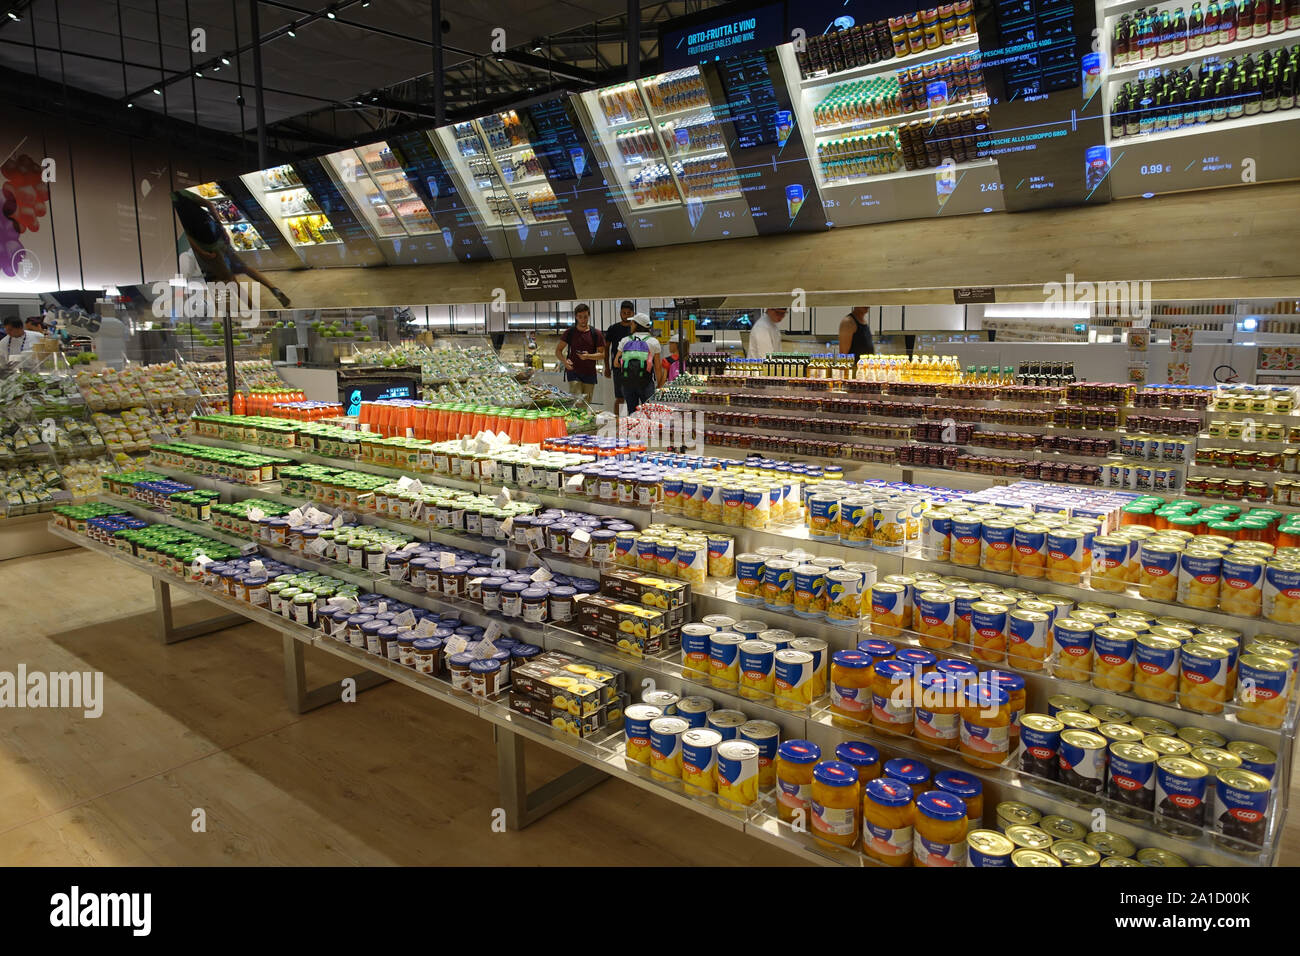 Mailand, Weltausstellung 2015, Supermarkt der Zukunft - Milano, Expo 2015, futuristic supermarket Stock Photo